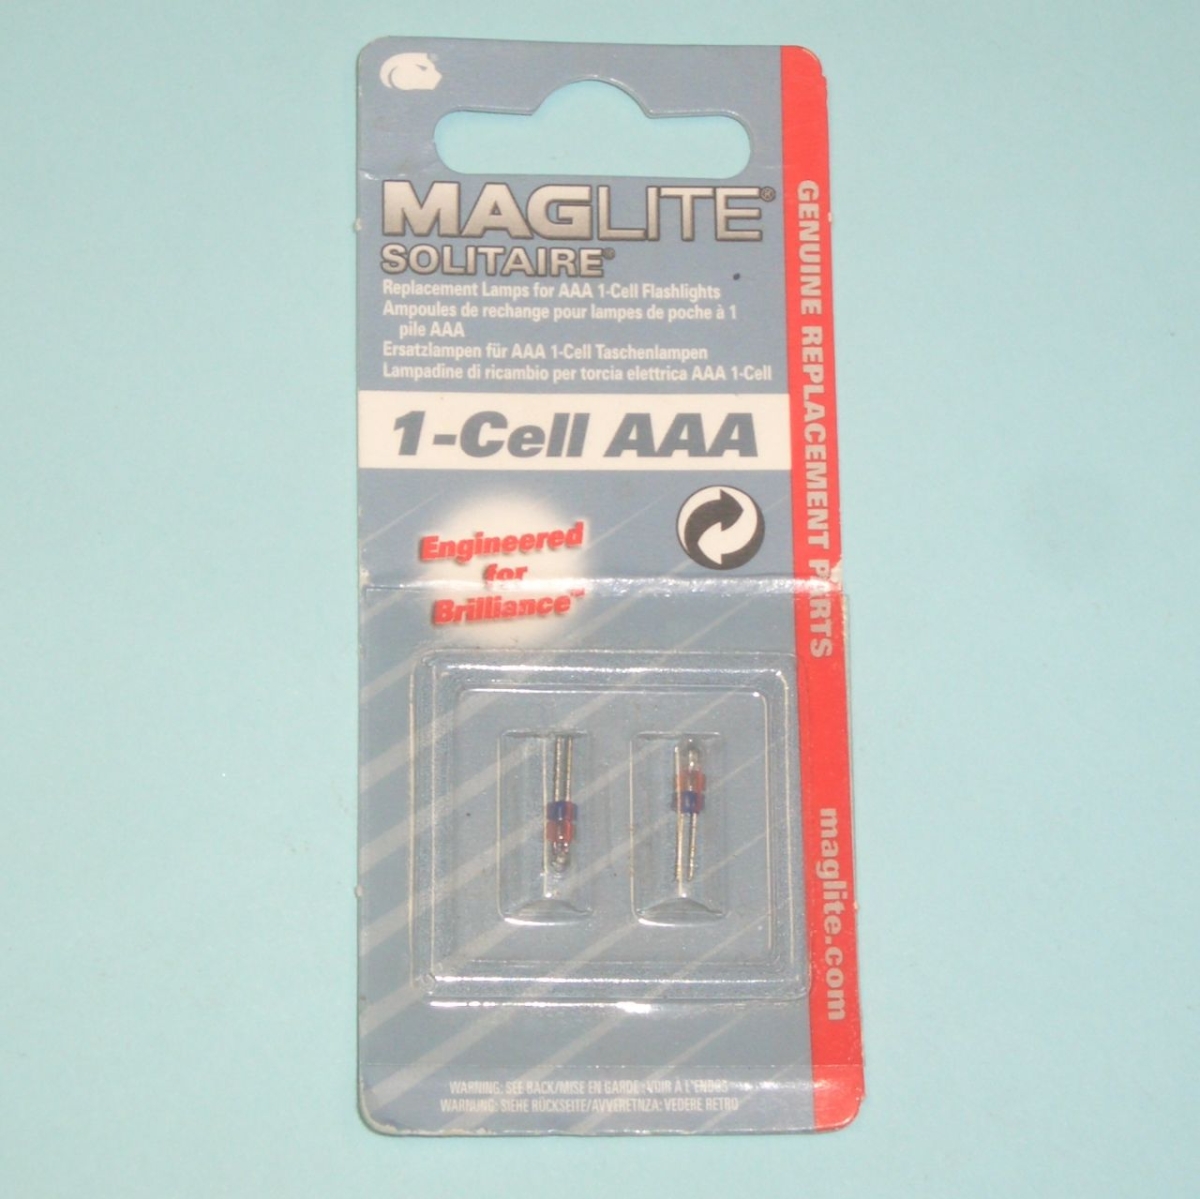 MagLite2 Ersatzbirnen für MagLite Solitaire AAA LK3A001E-Preis für 2 StückArtikel-Nr: 393505L